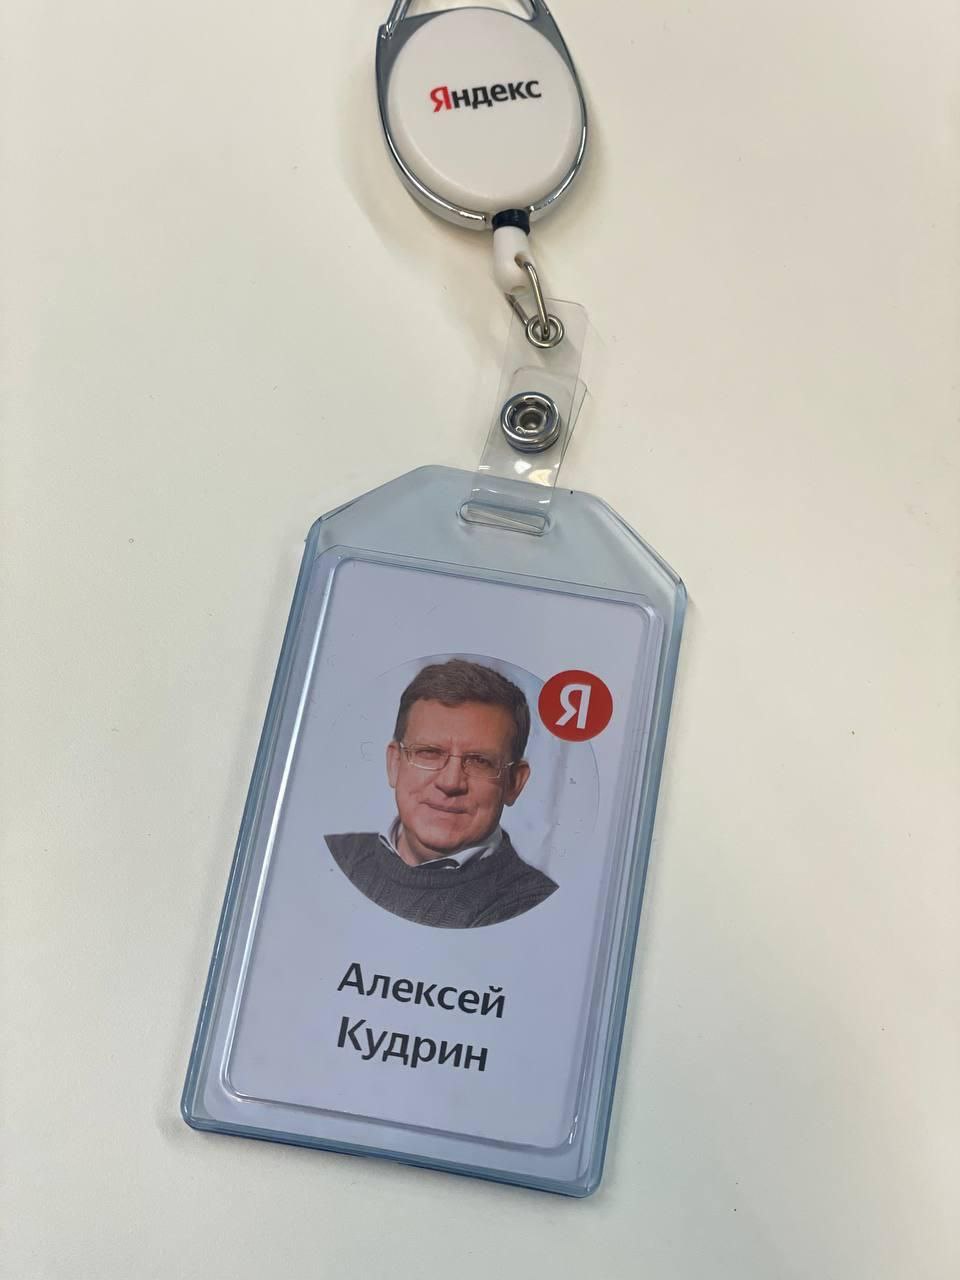 Новый сотрудник приступил к работе в Яндексе